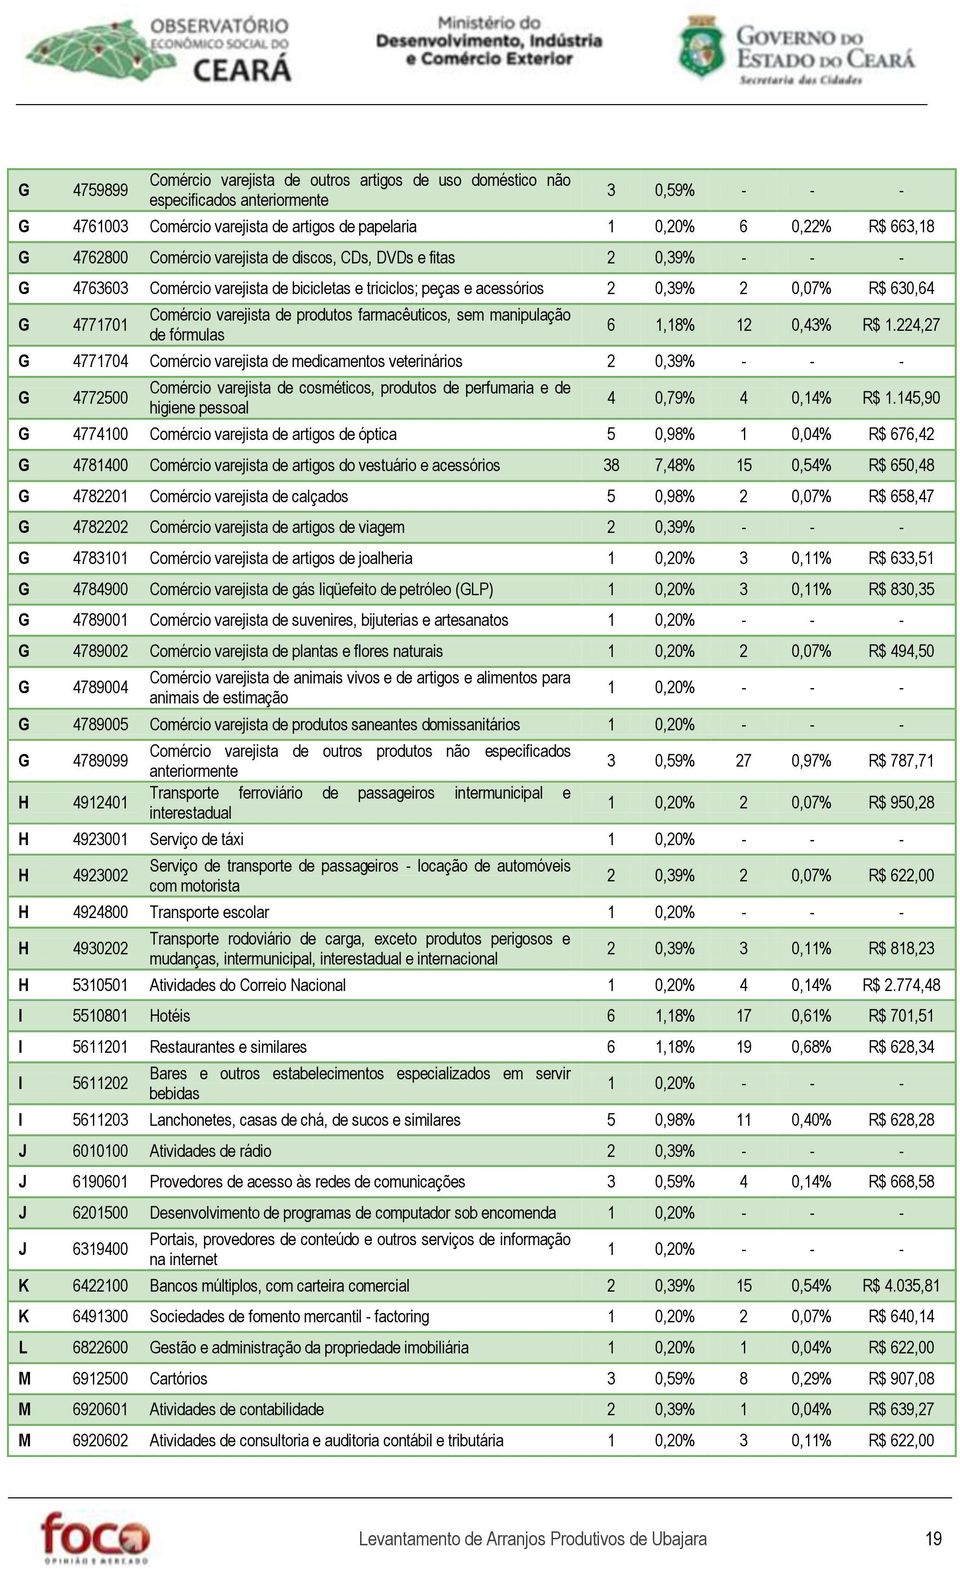 produtos farmacêuticos, sem manipulação de fórmulas 6 1,18% 12 0,43% R$ 1.